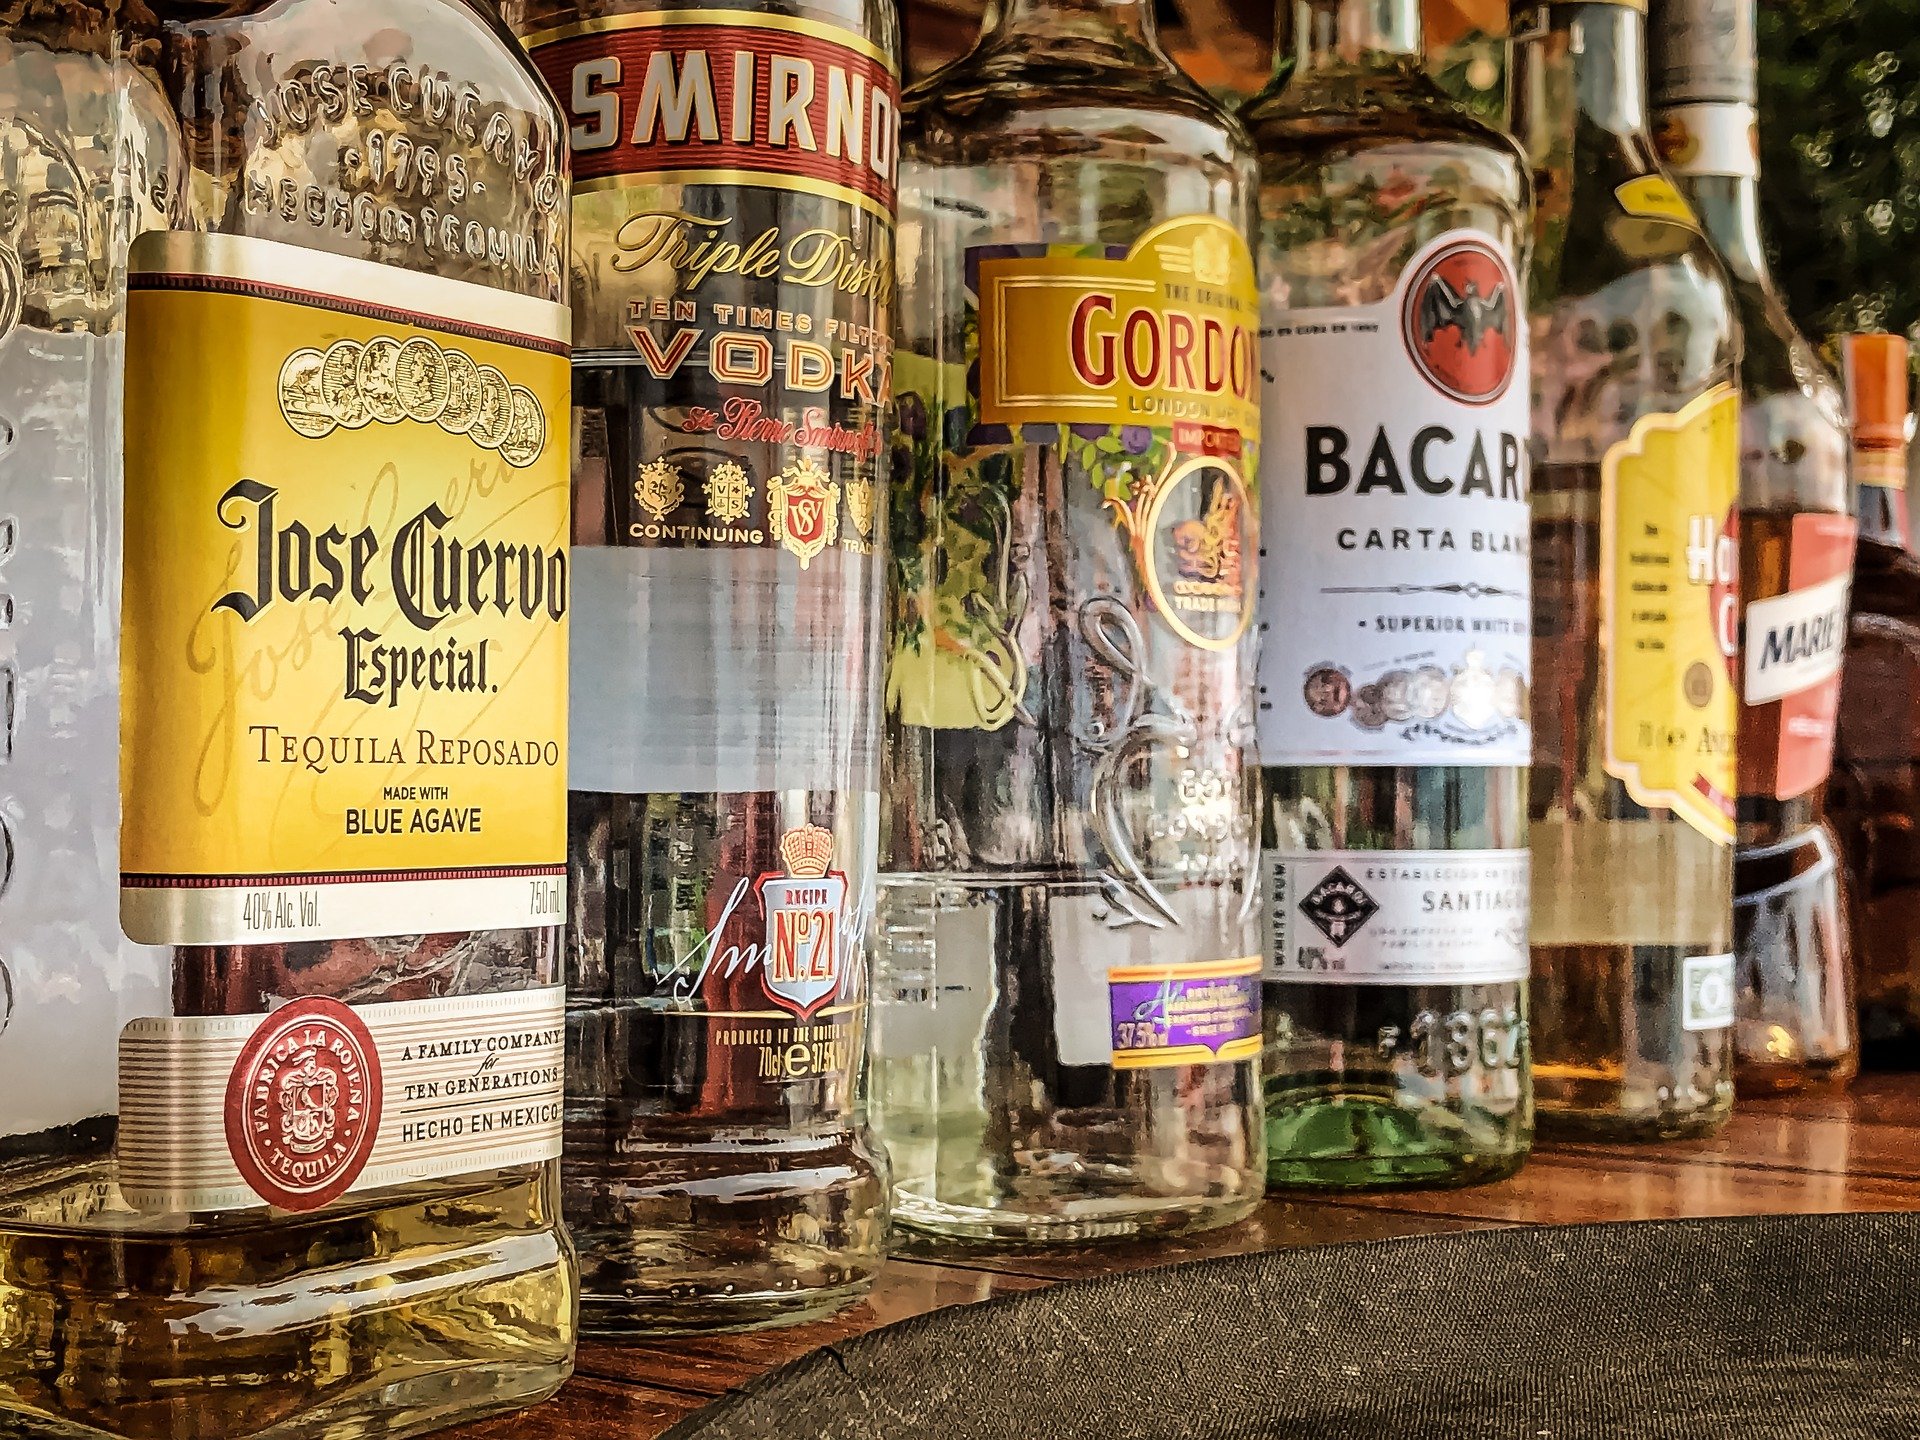 Una ordenanza premonitoria: Vender alcohol en tiendas desde las 22:00 horas  lleva prohibido en Cuenca 11 años - Voces de Cuenca